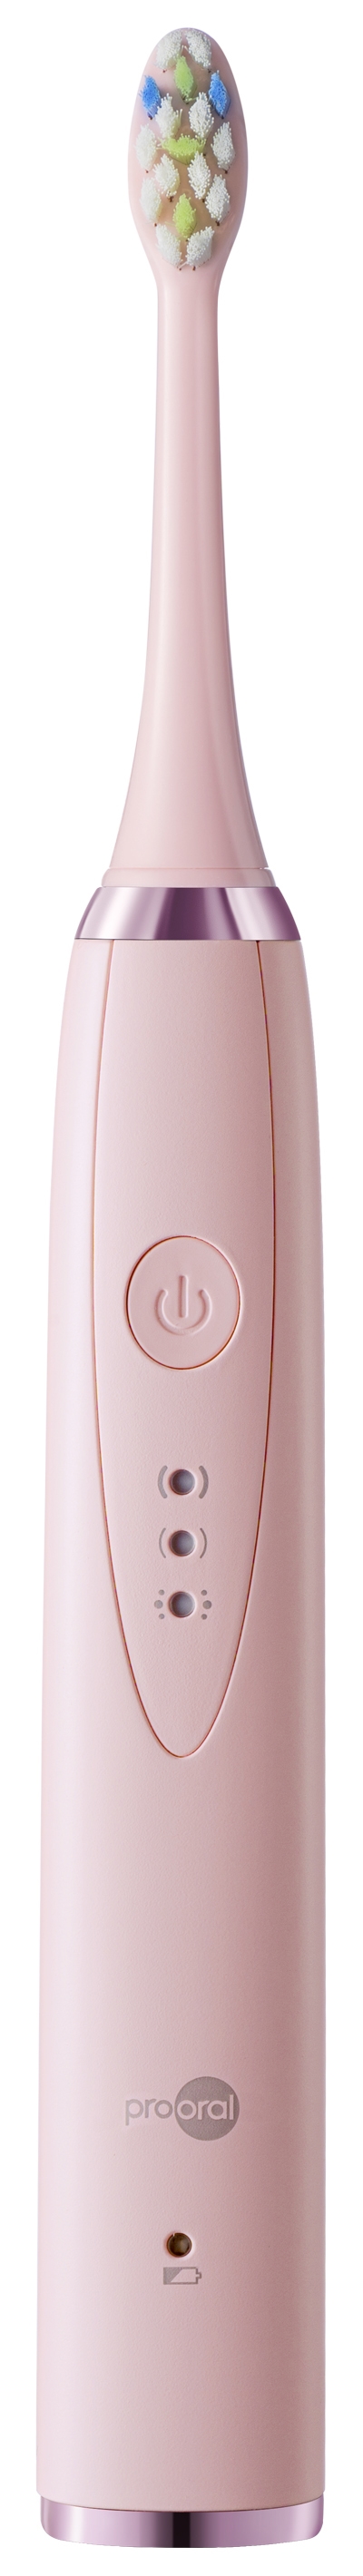 Звуковая зубная щетка Prooral T09 розовая